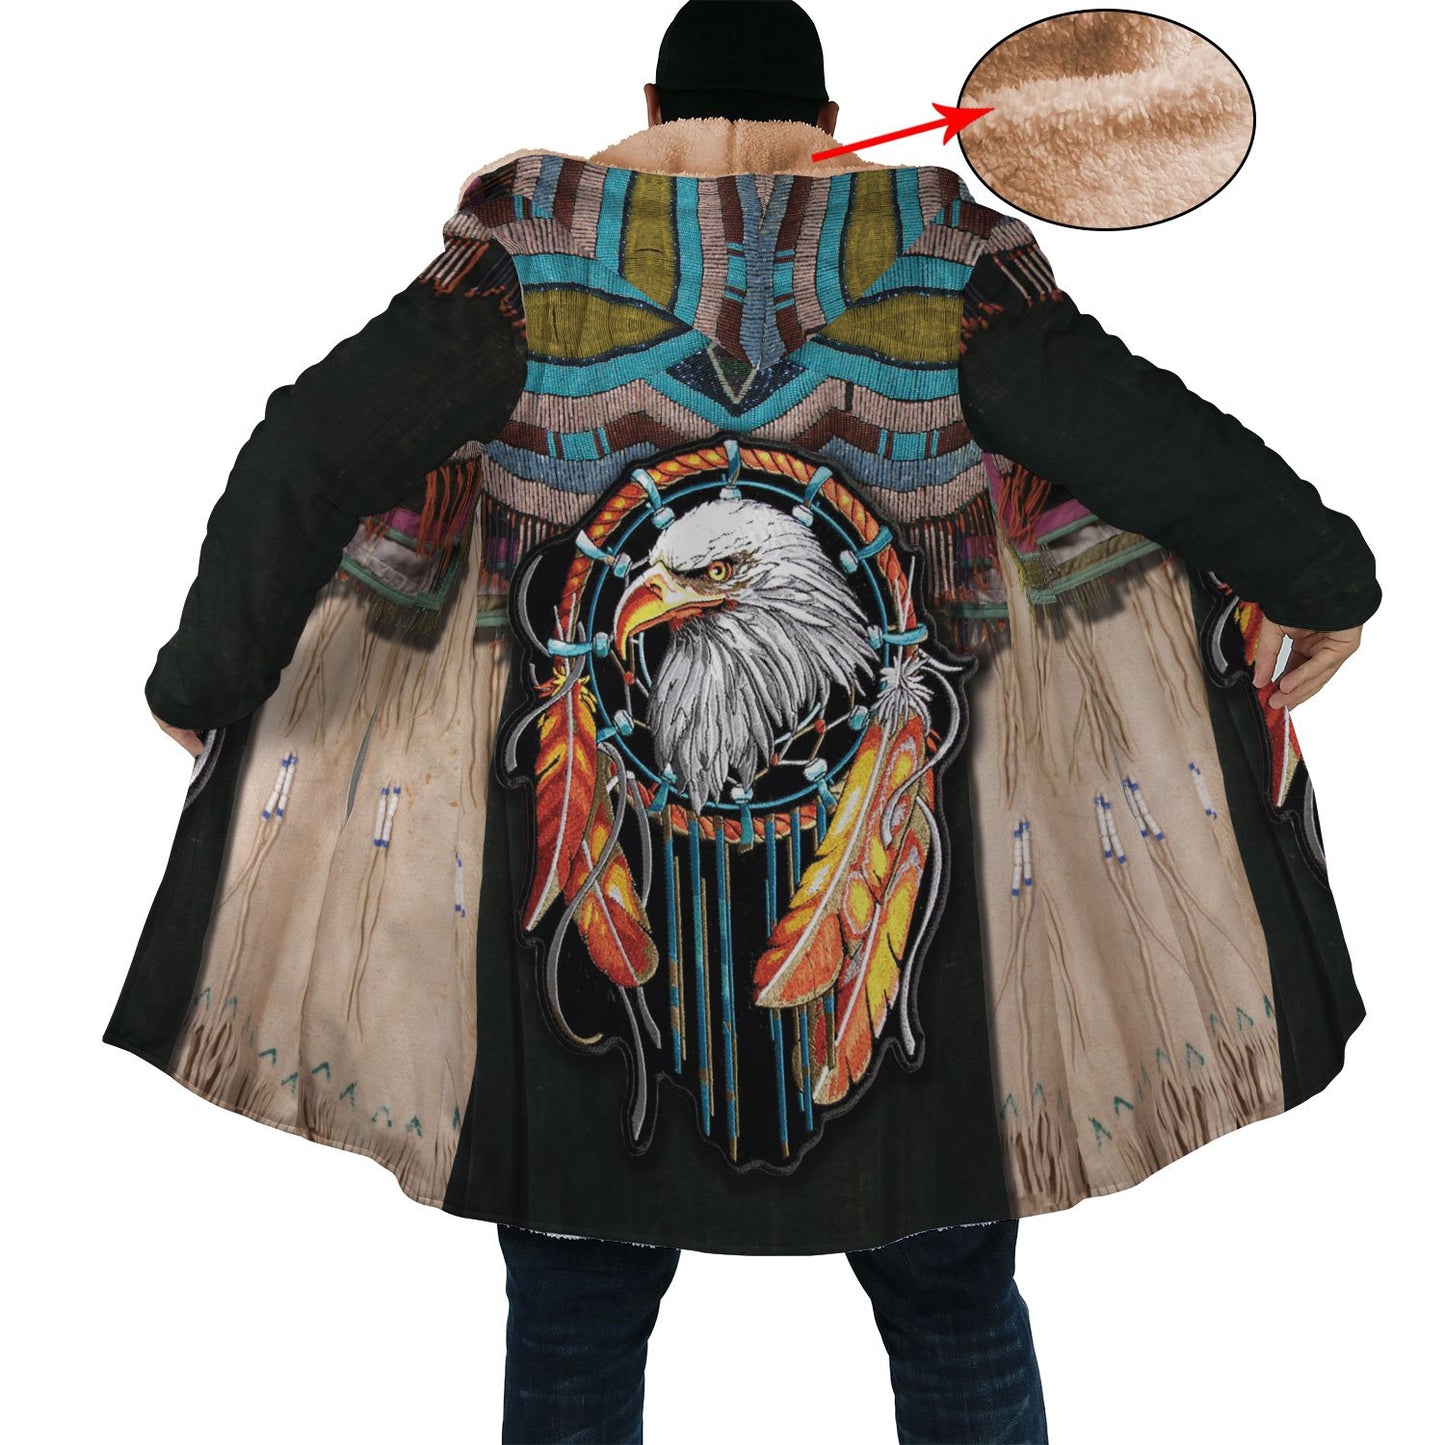 WelcomeNative Eagle Power 3D Dream Cloak, All Over Print Dream Cloak, Native American